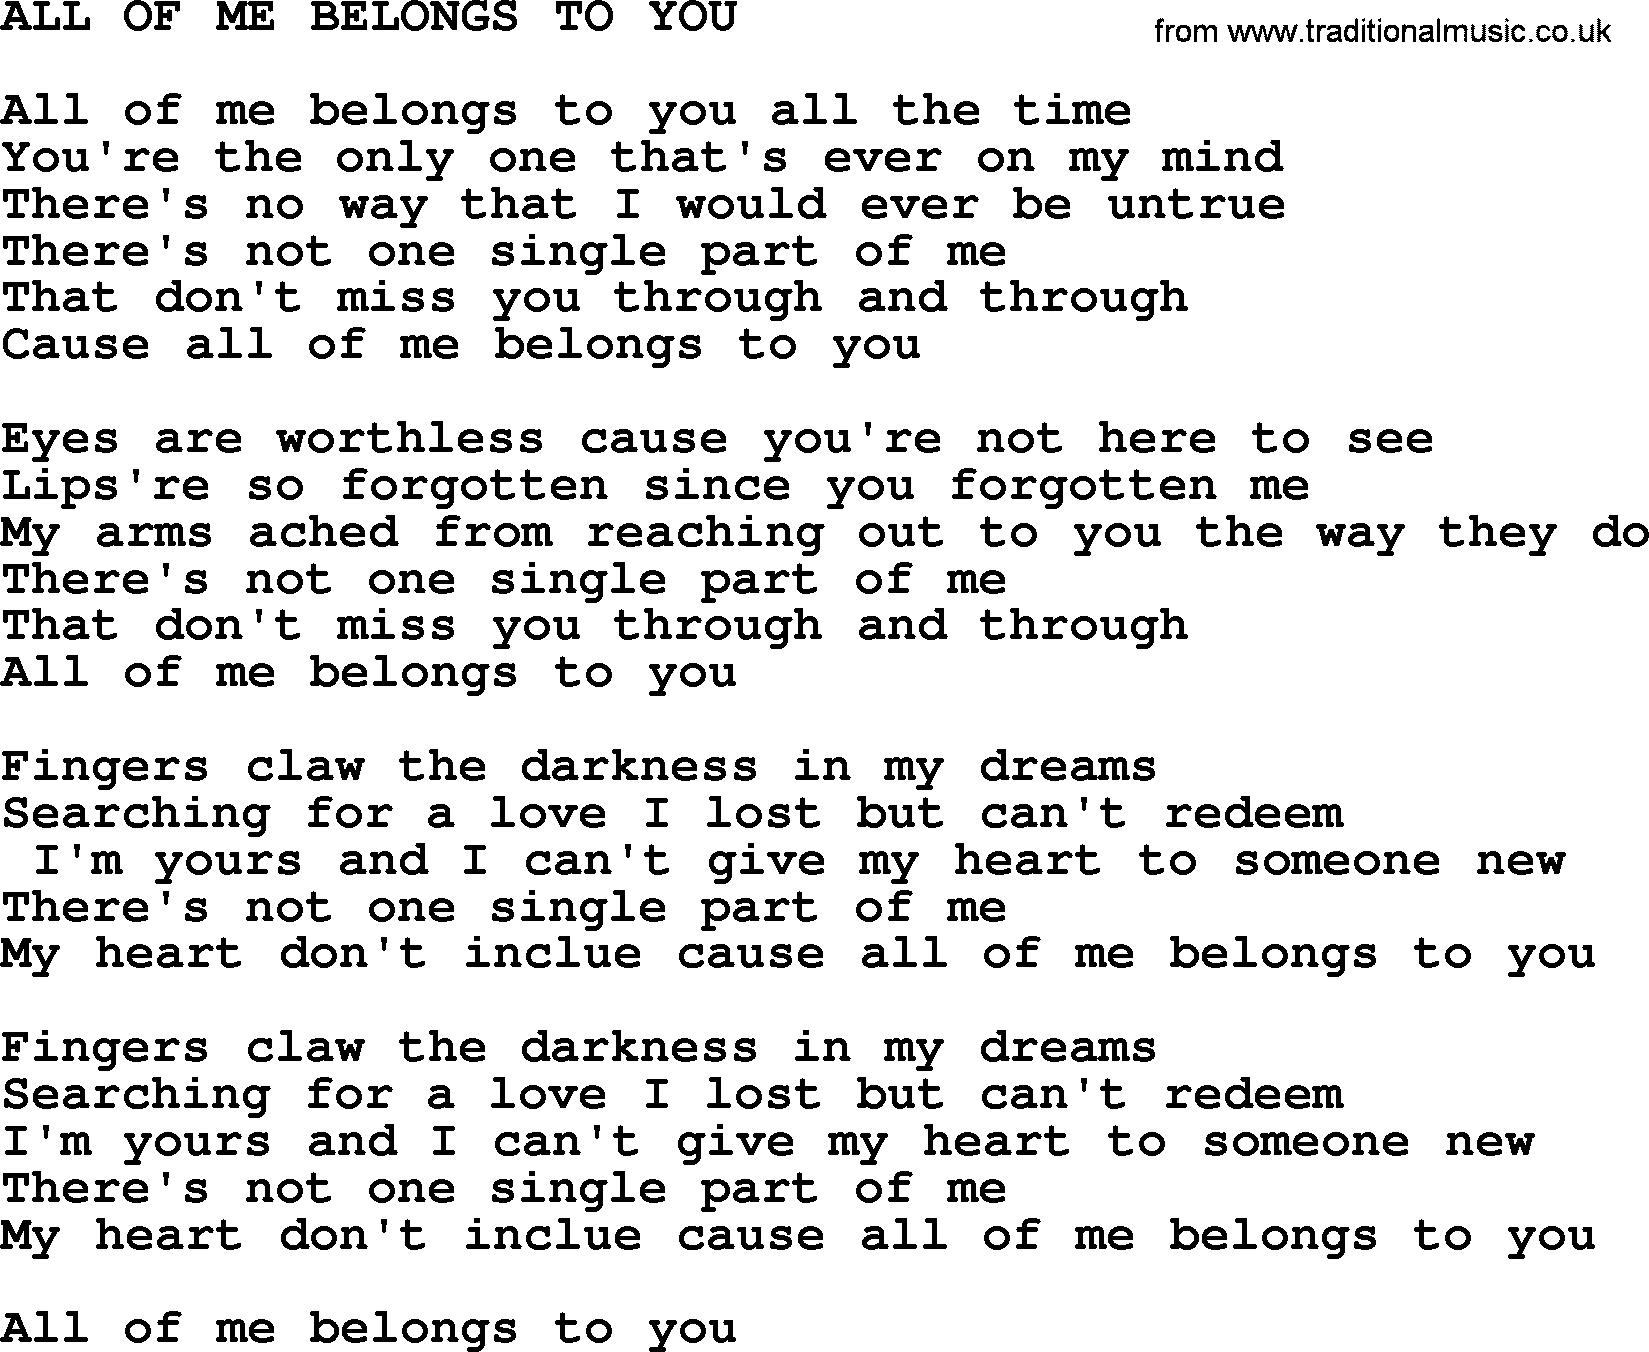 Merle Haggard song: All Of Me Belongs To You, lyrics.